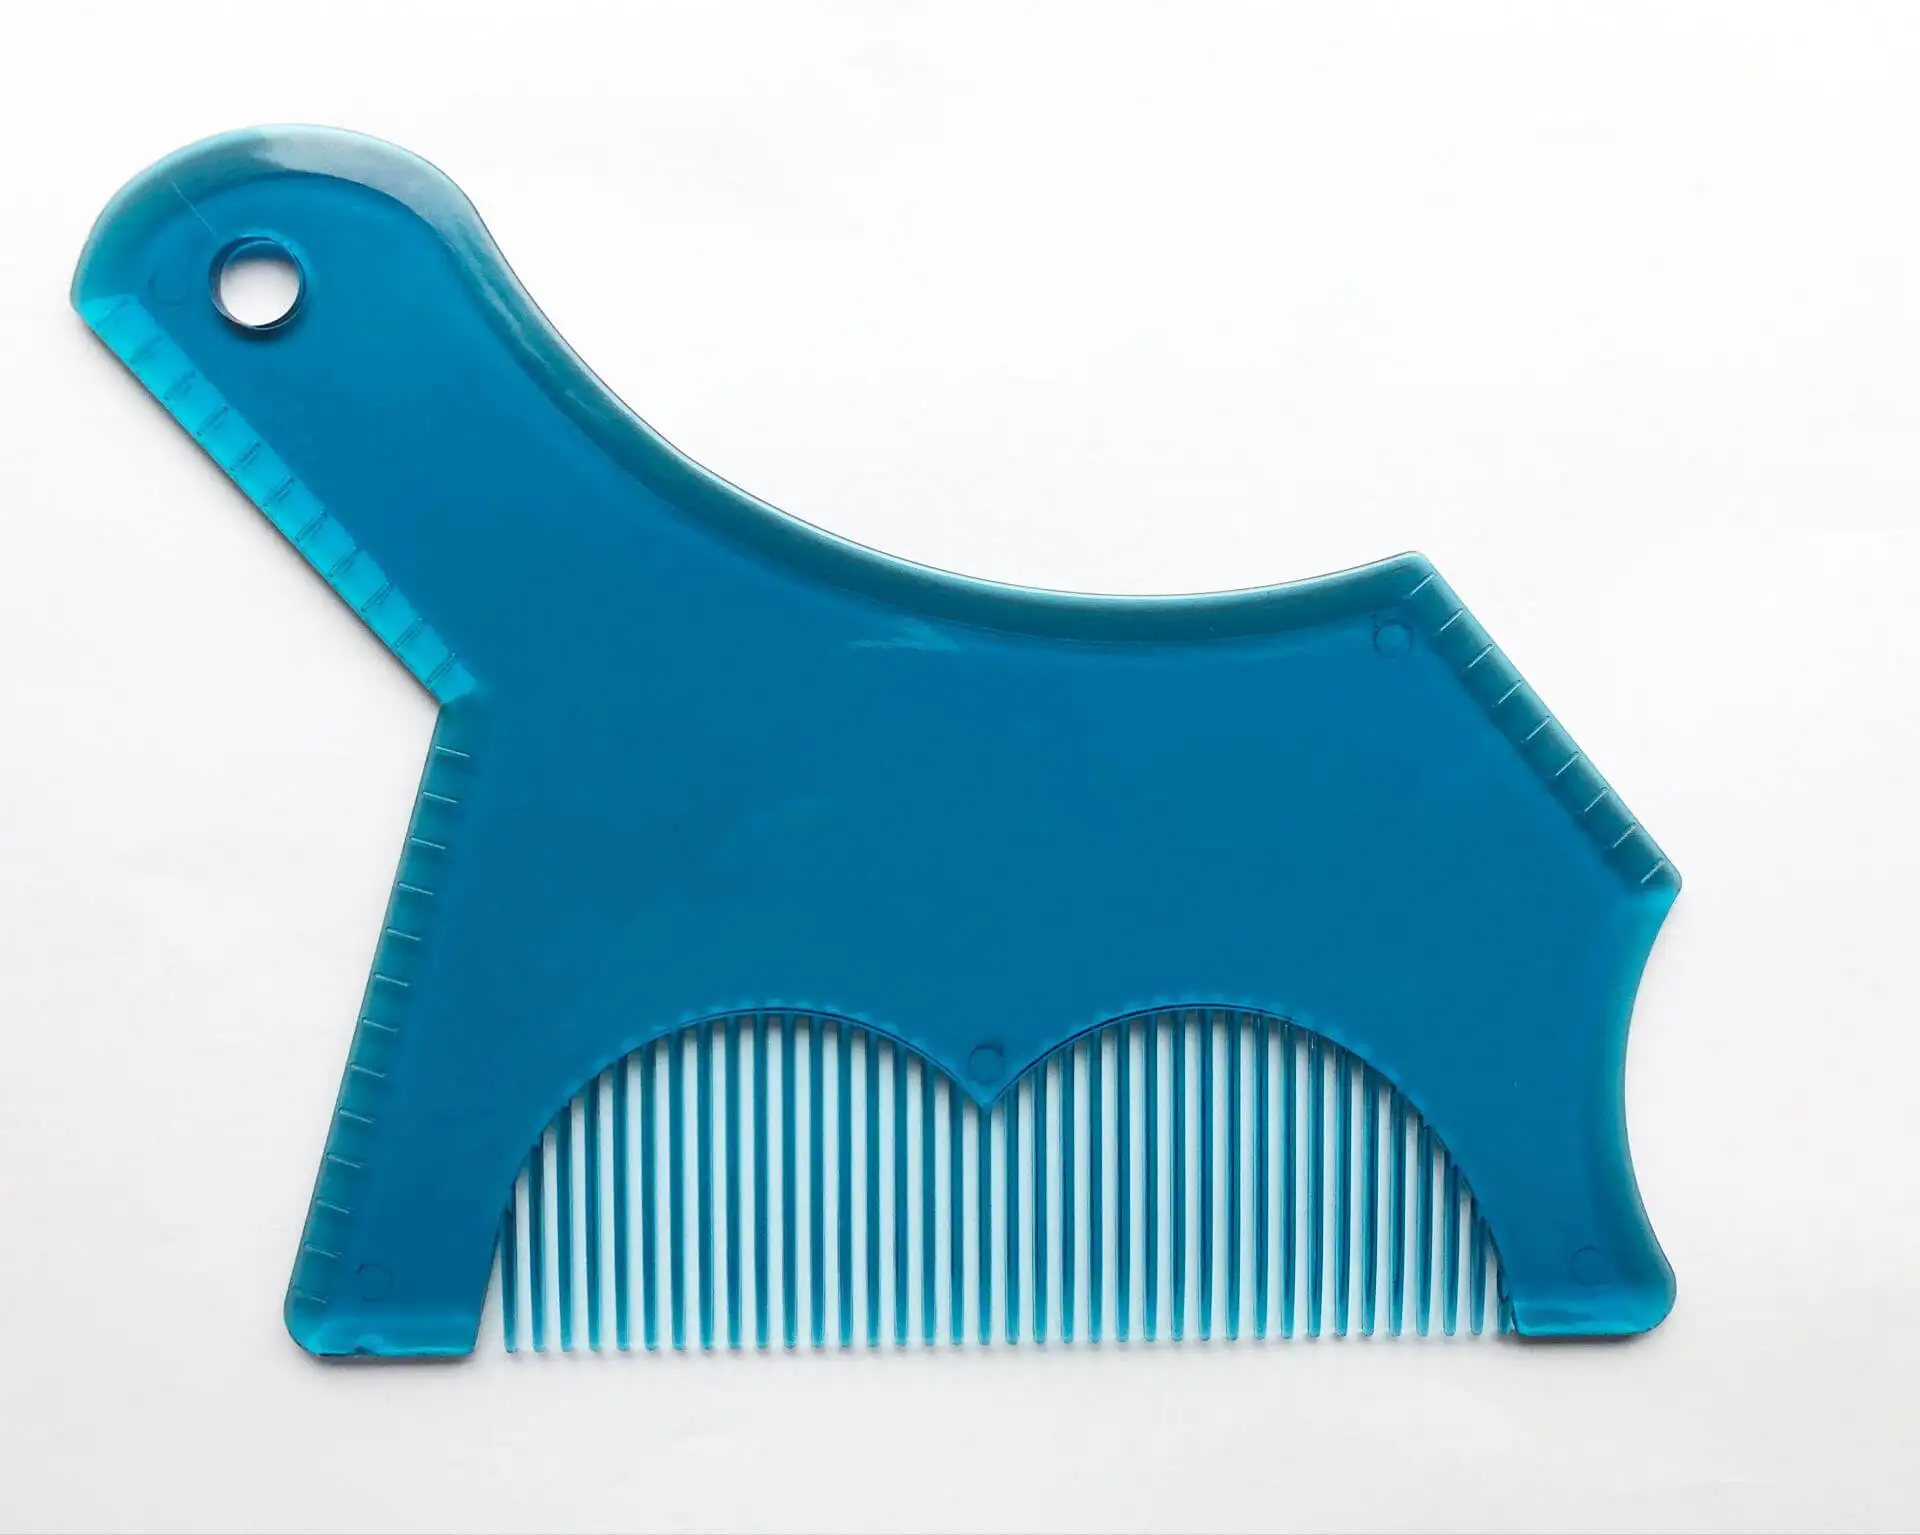 Инновационный дизайн инструмент для придания формы бороде инструмент для подравнивания формы шаблон руководство для бритья или трафарет с полноразмерным гребнем для линейки - Цвет: Blue